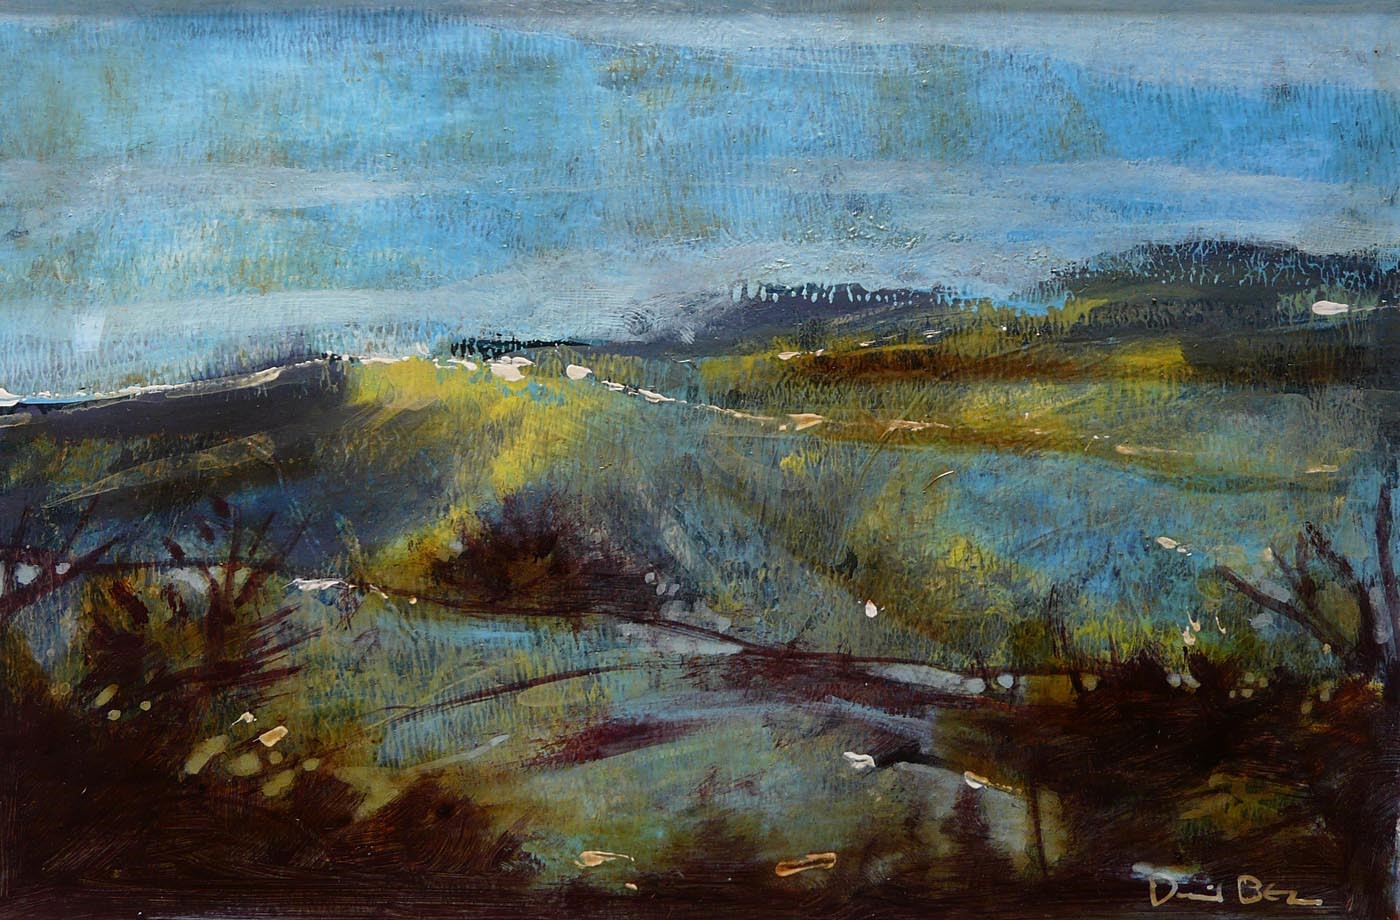 Pennine View by David Bez, Northern | Landscape